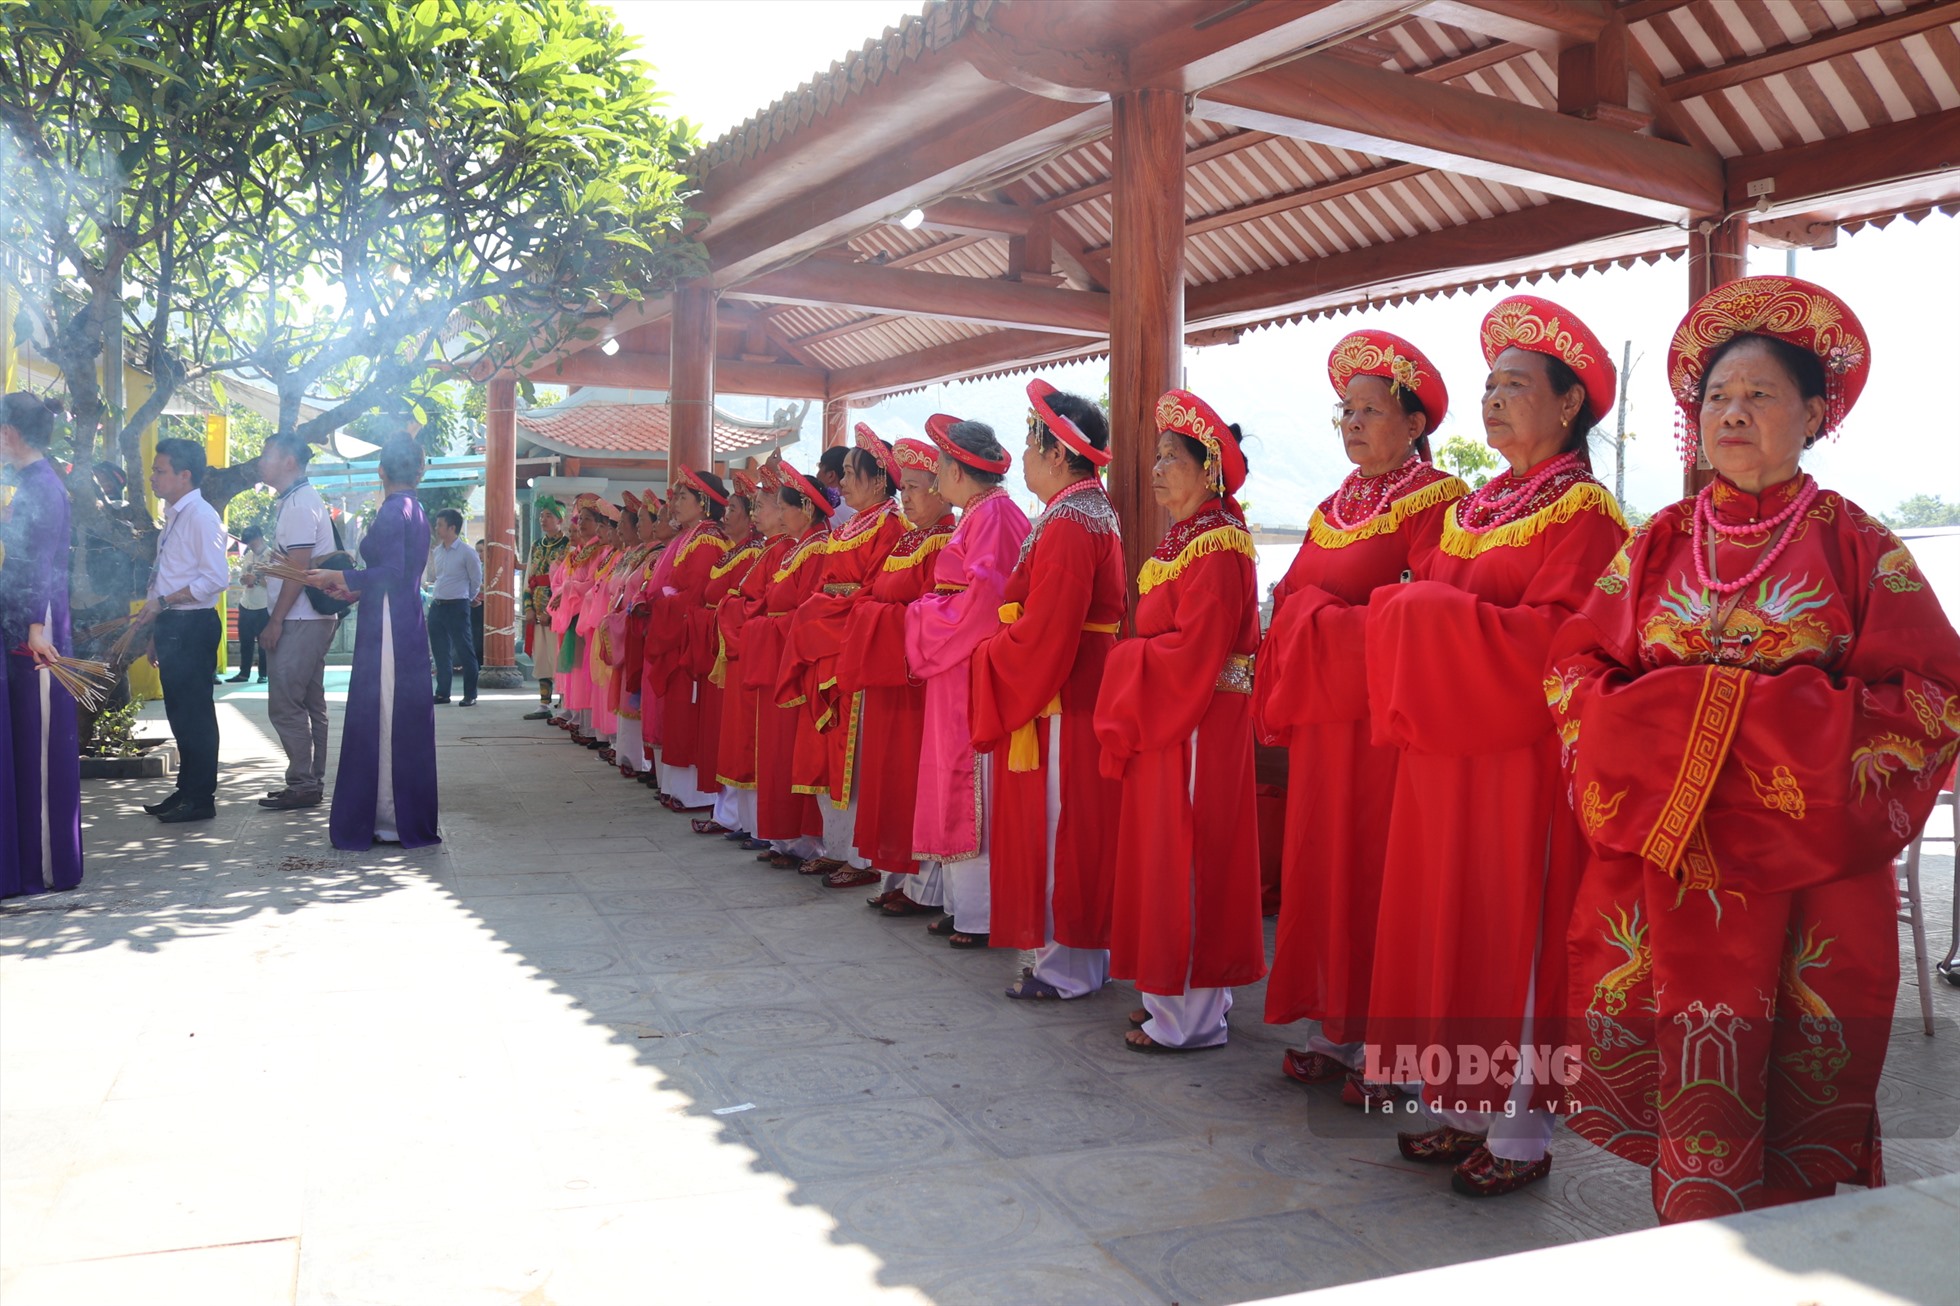 Lễ hội đền Bảo Hà đã được Bộ Văn hóa, Thể thao và Du lịch công nhận là di sản văn hóa phi vật thể cấp quốc gia năm 2016.